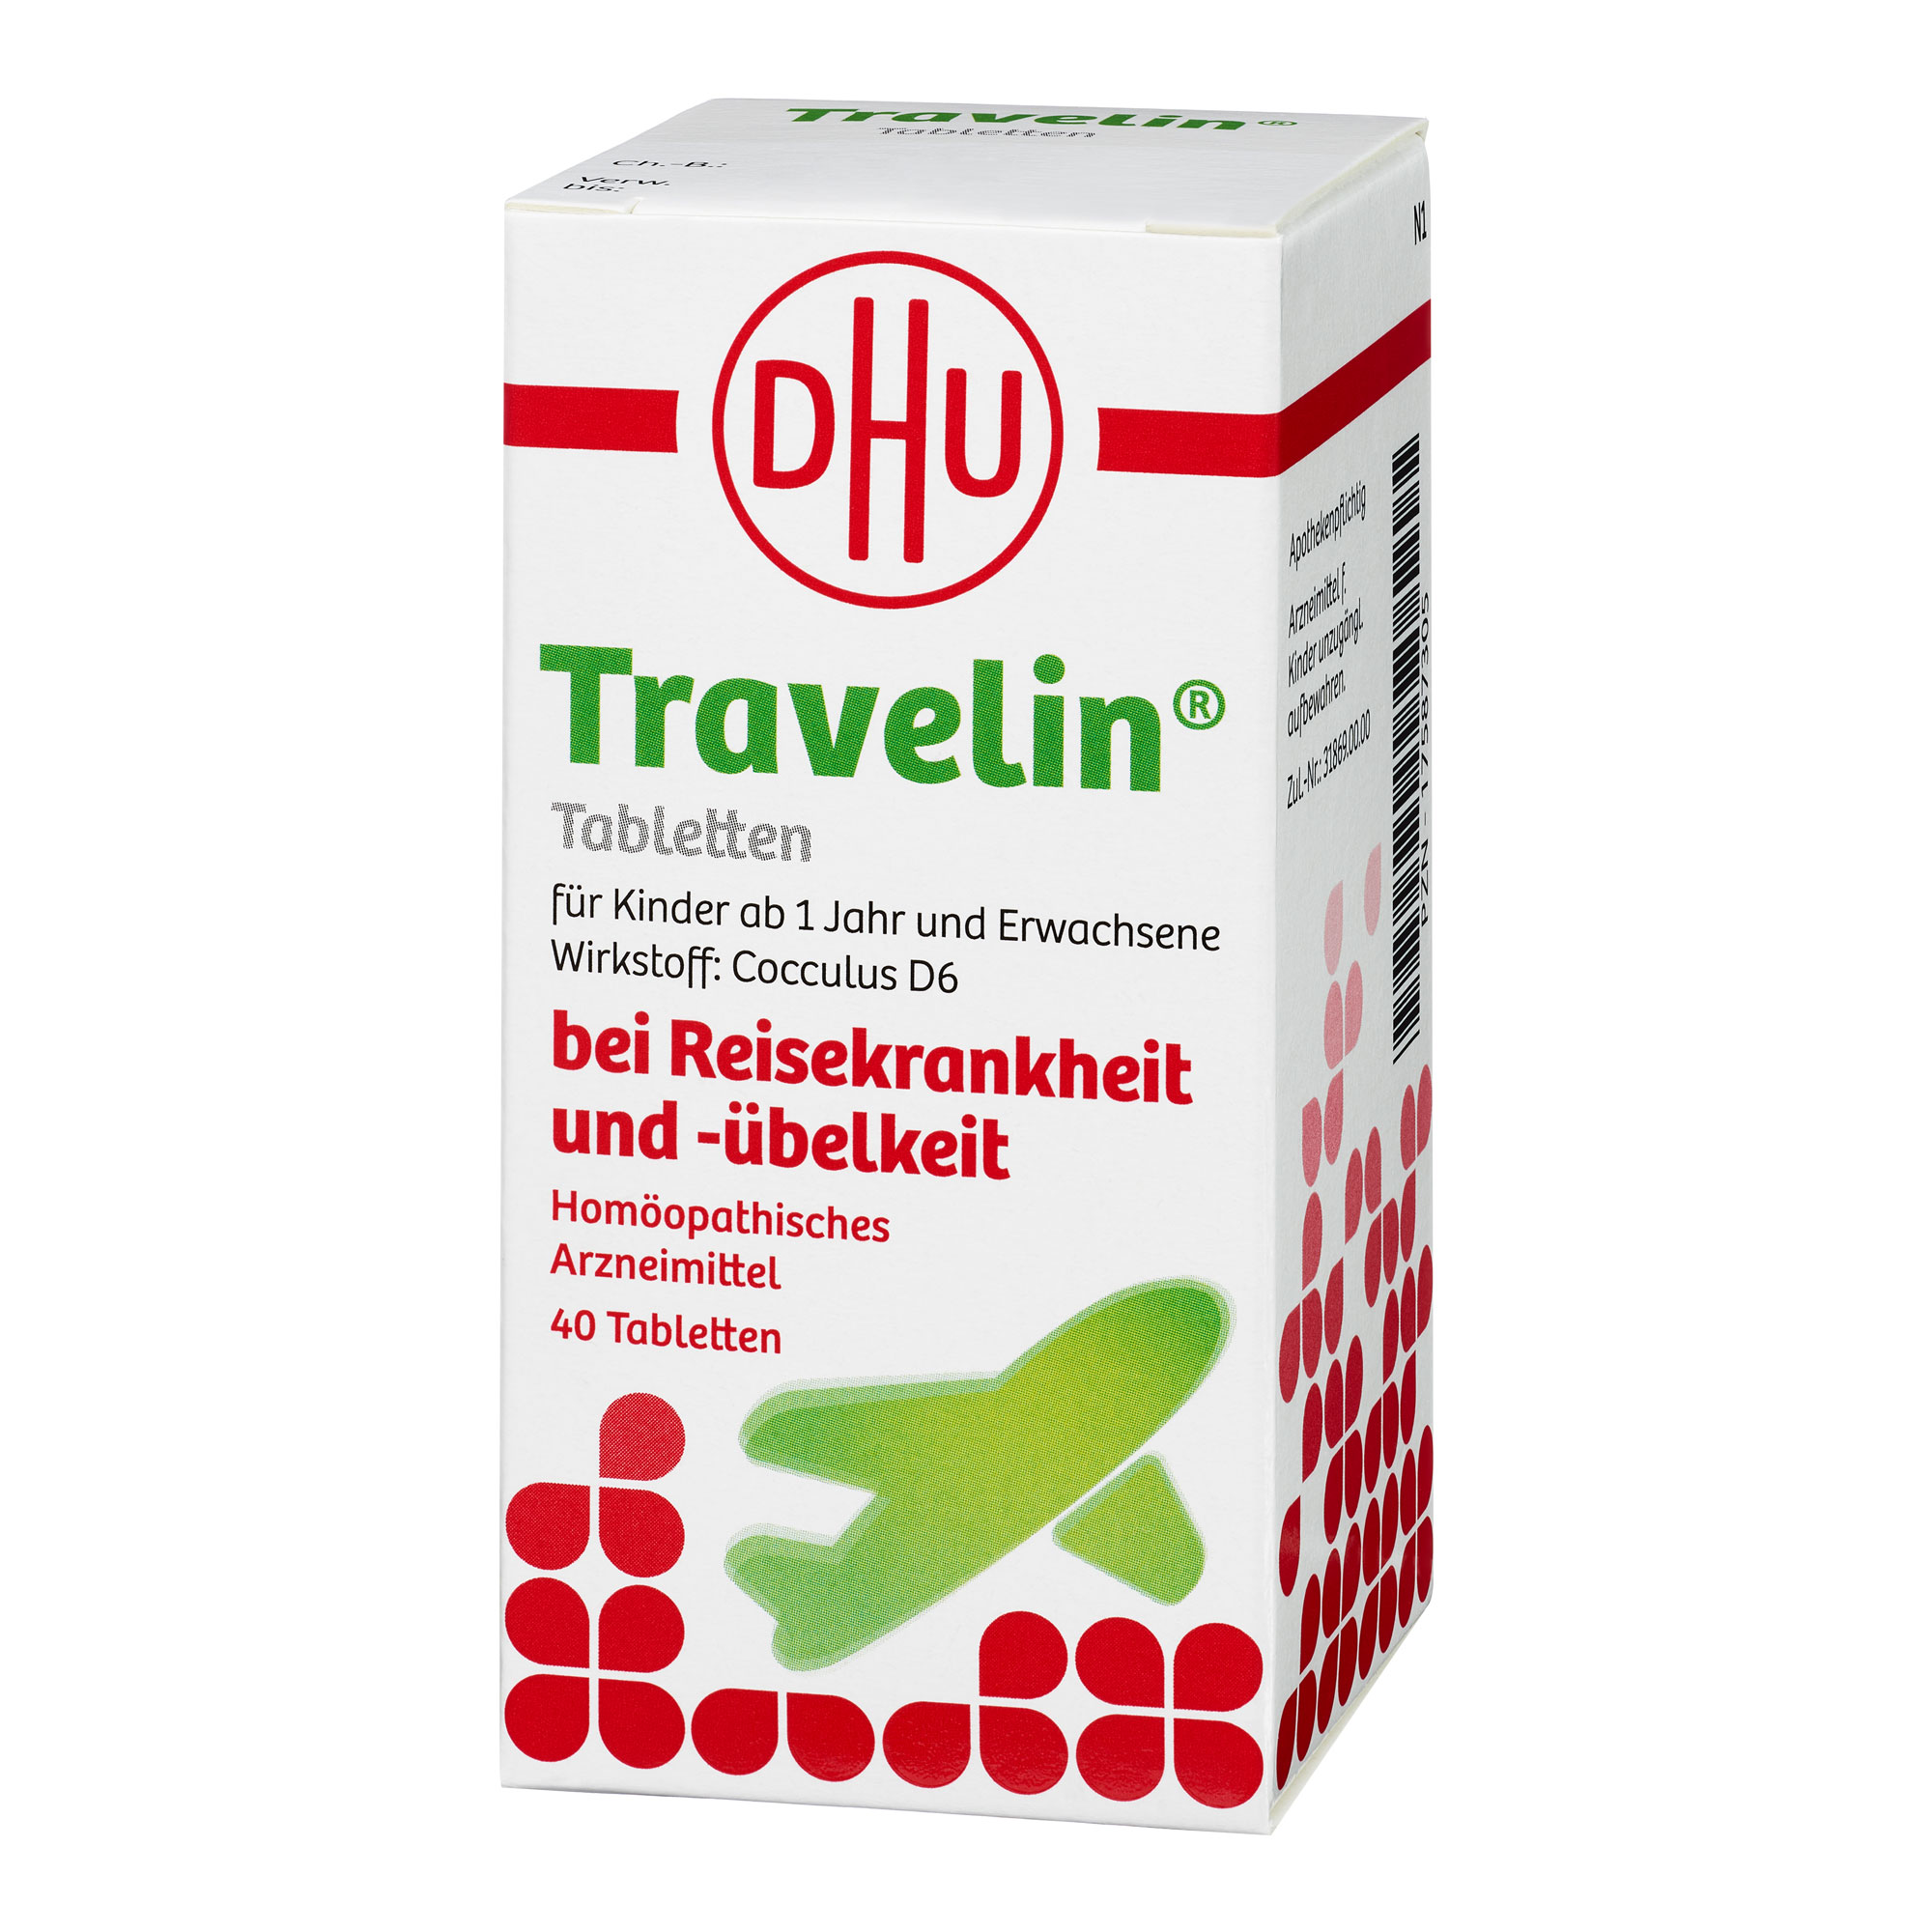 DHU Travelin Tabletten